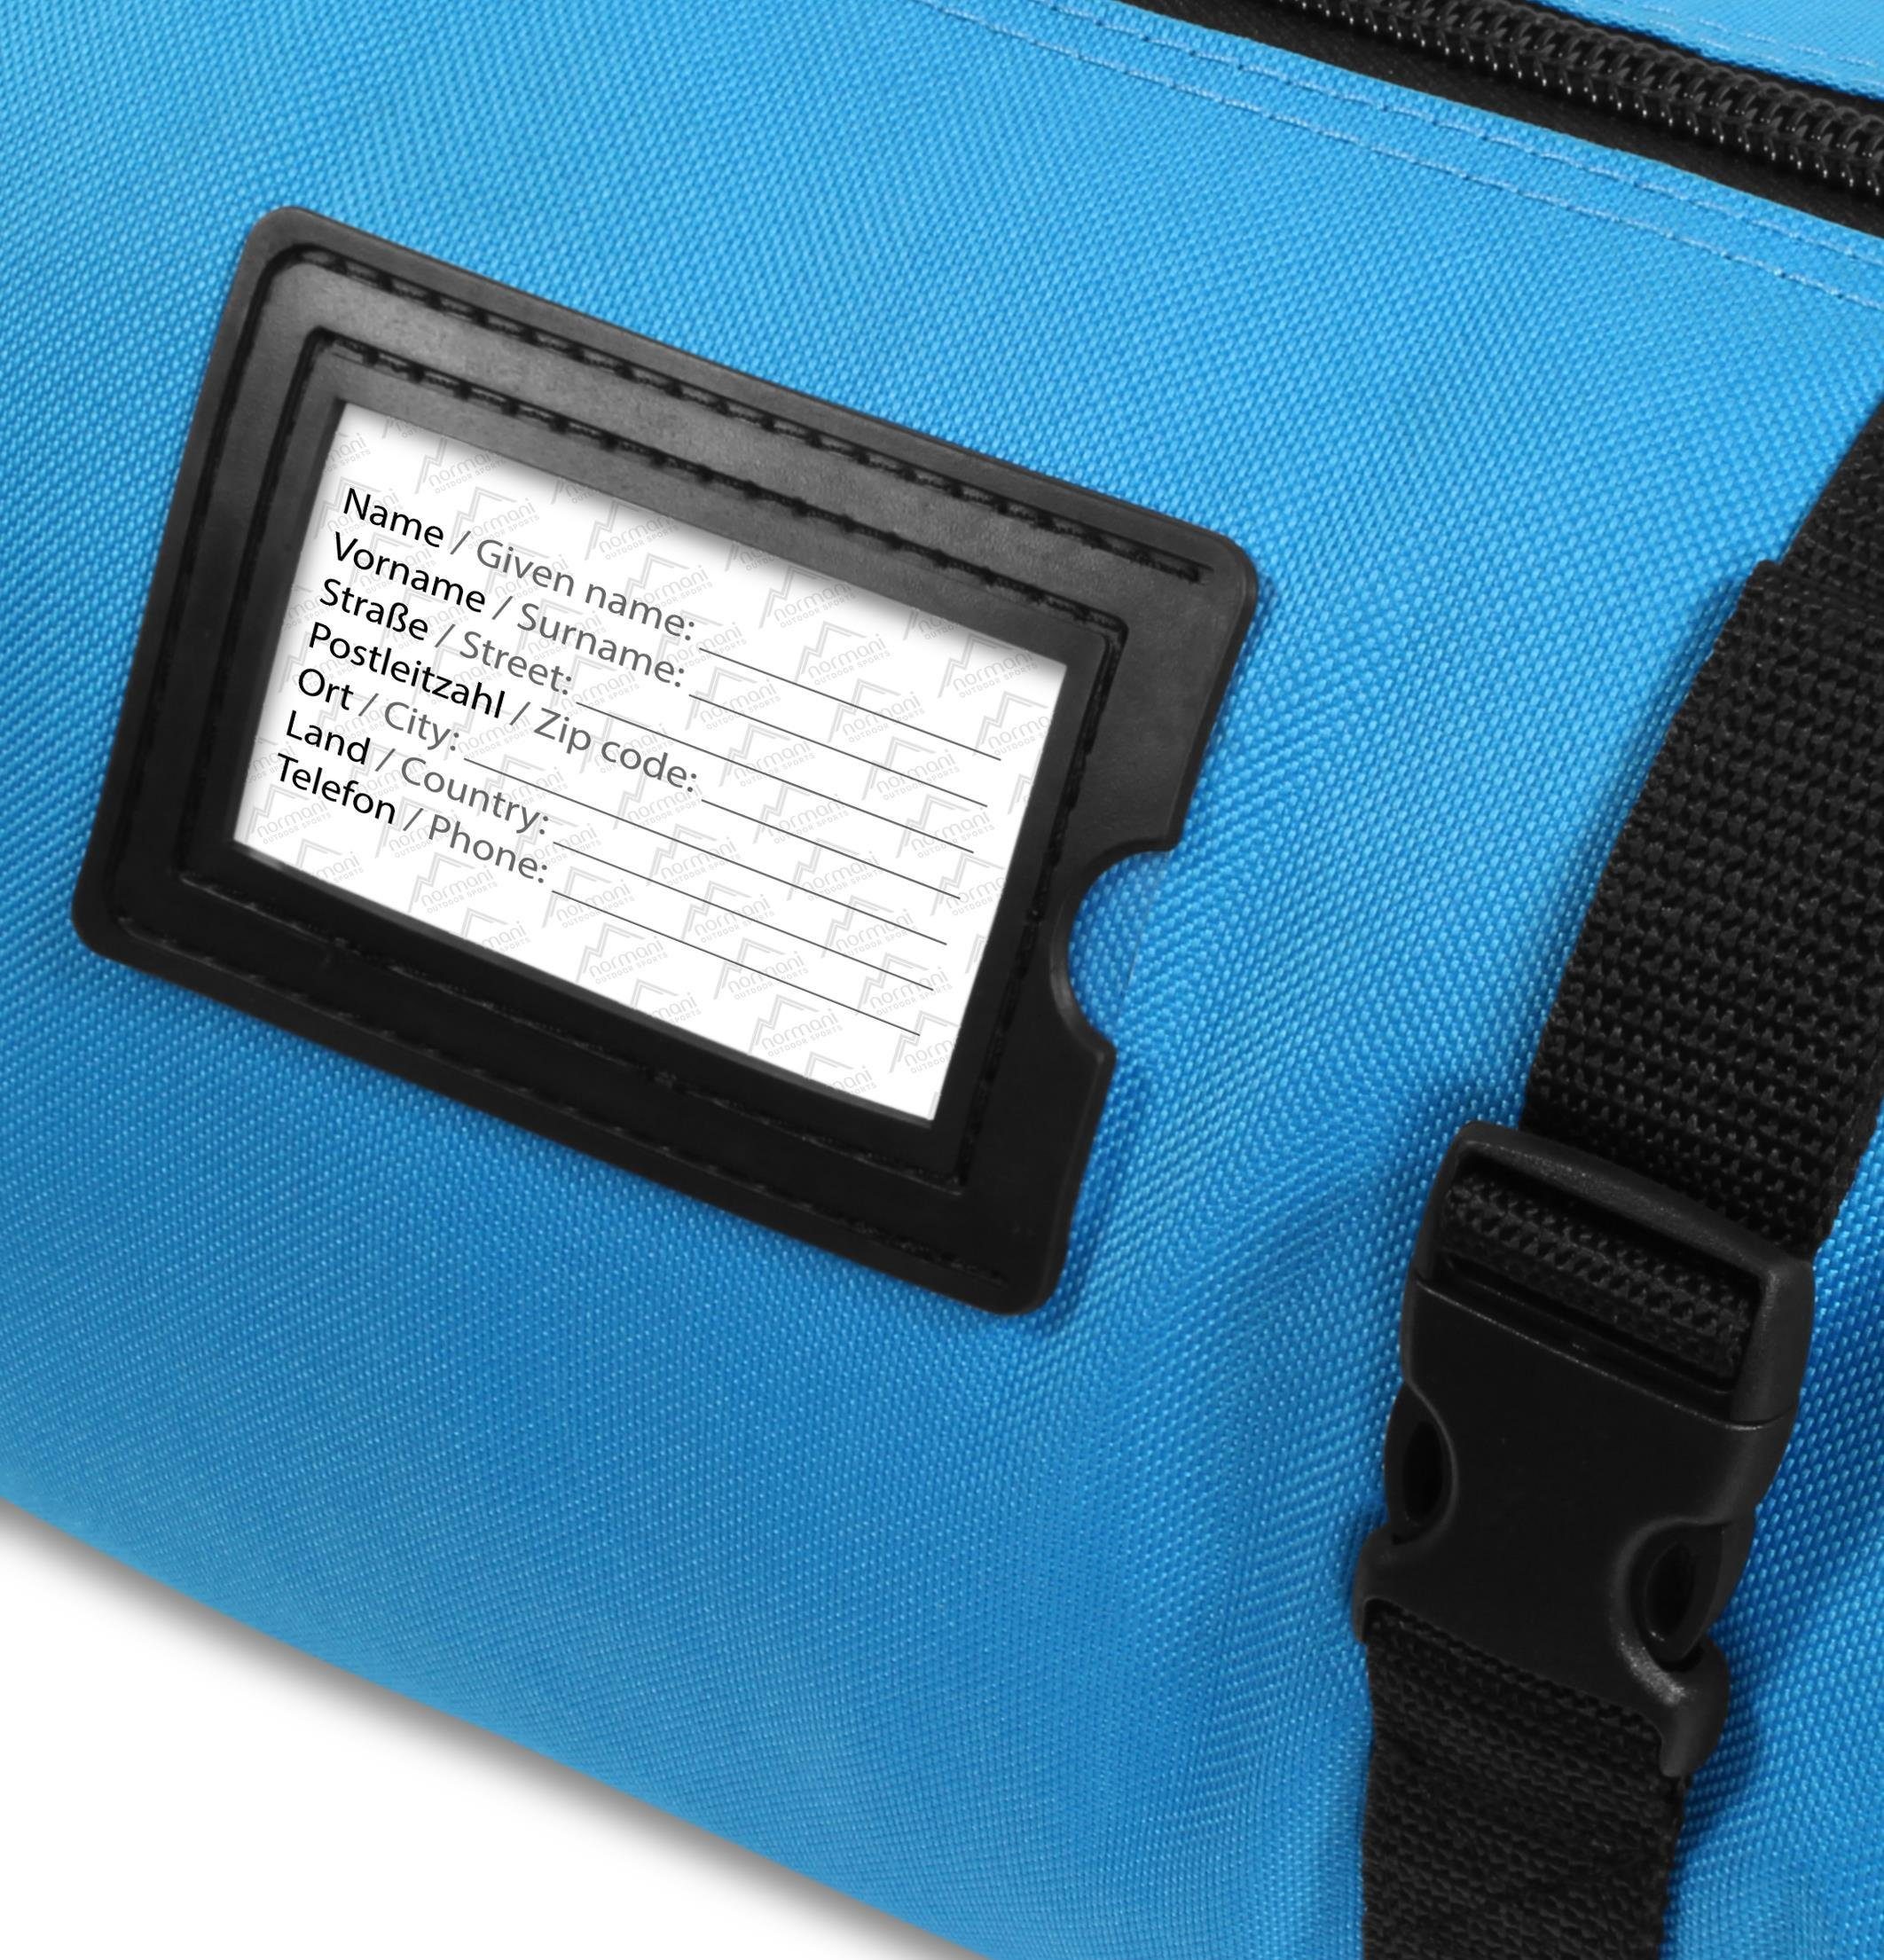 Sporttasche Skitasche normani Alpine Transporttasche Aufbewahrungstasche 200, - Skisack Blau für Skistöcke und Run Skitasche Skier